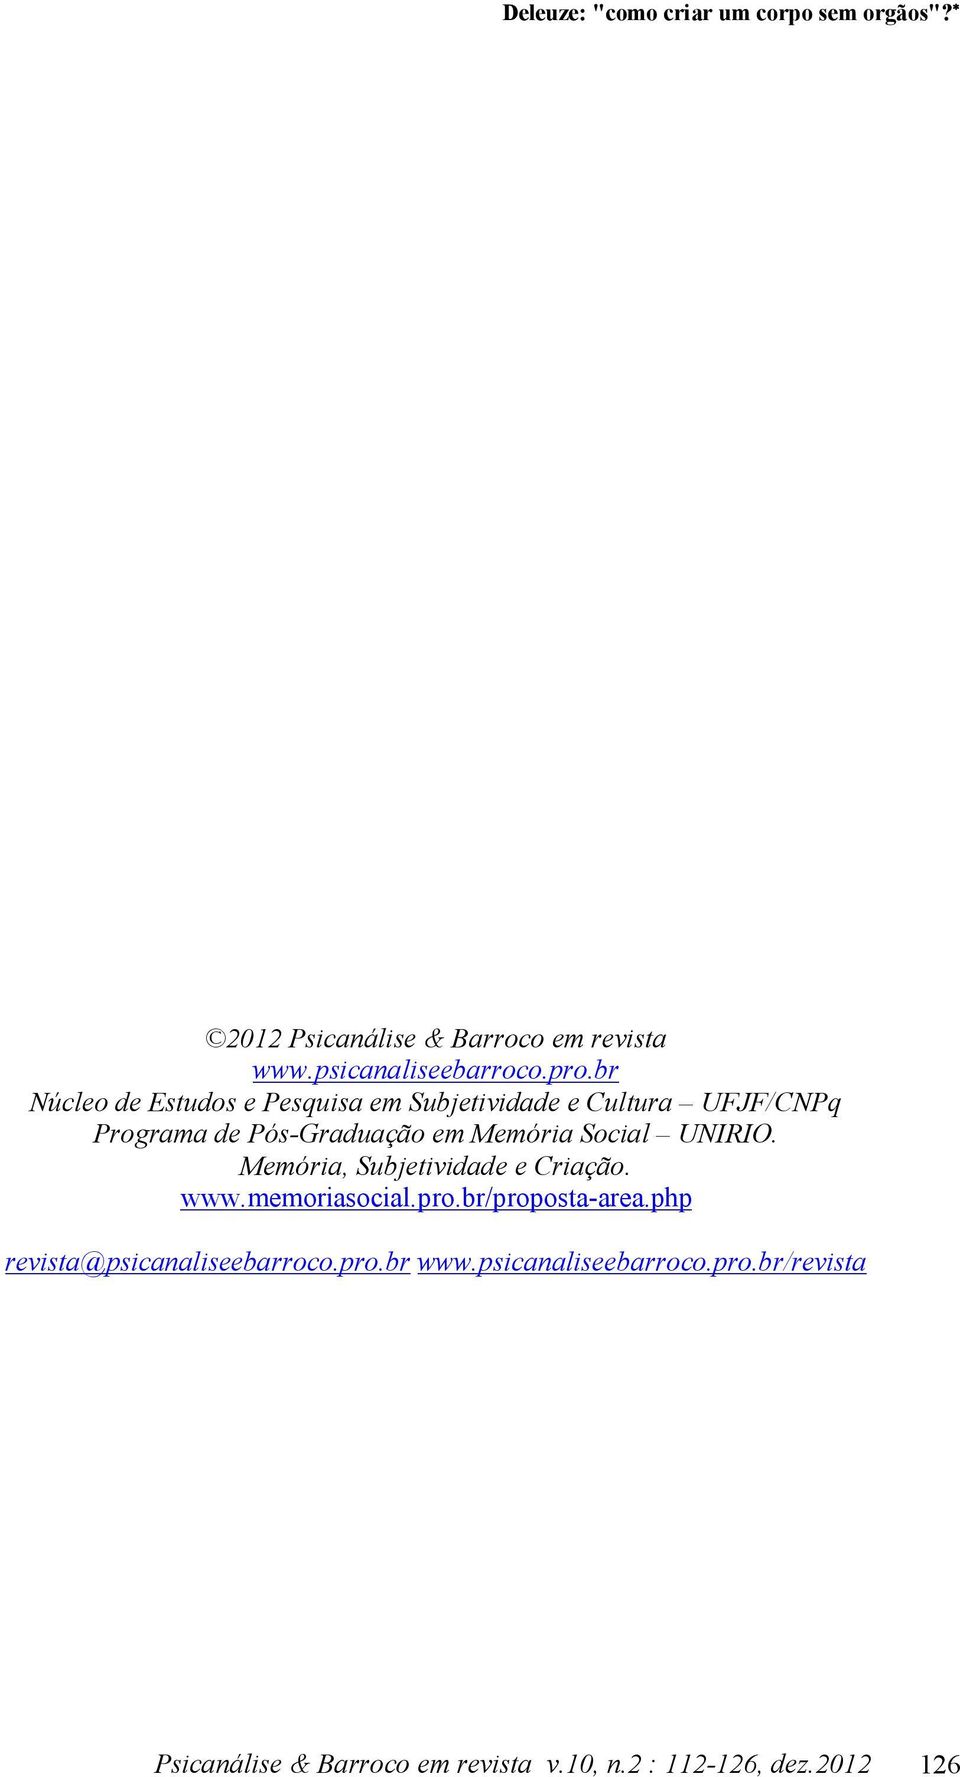 Social UNIRIO. Memória, Subjetividade e Criação. www.memoriasocial.pro.br/proposta-area.